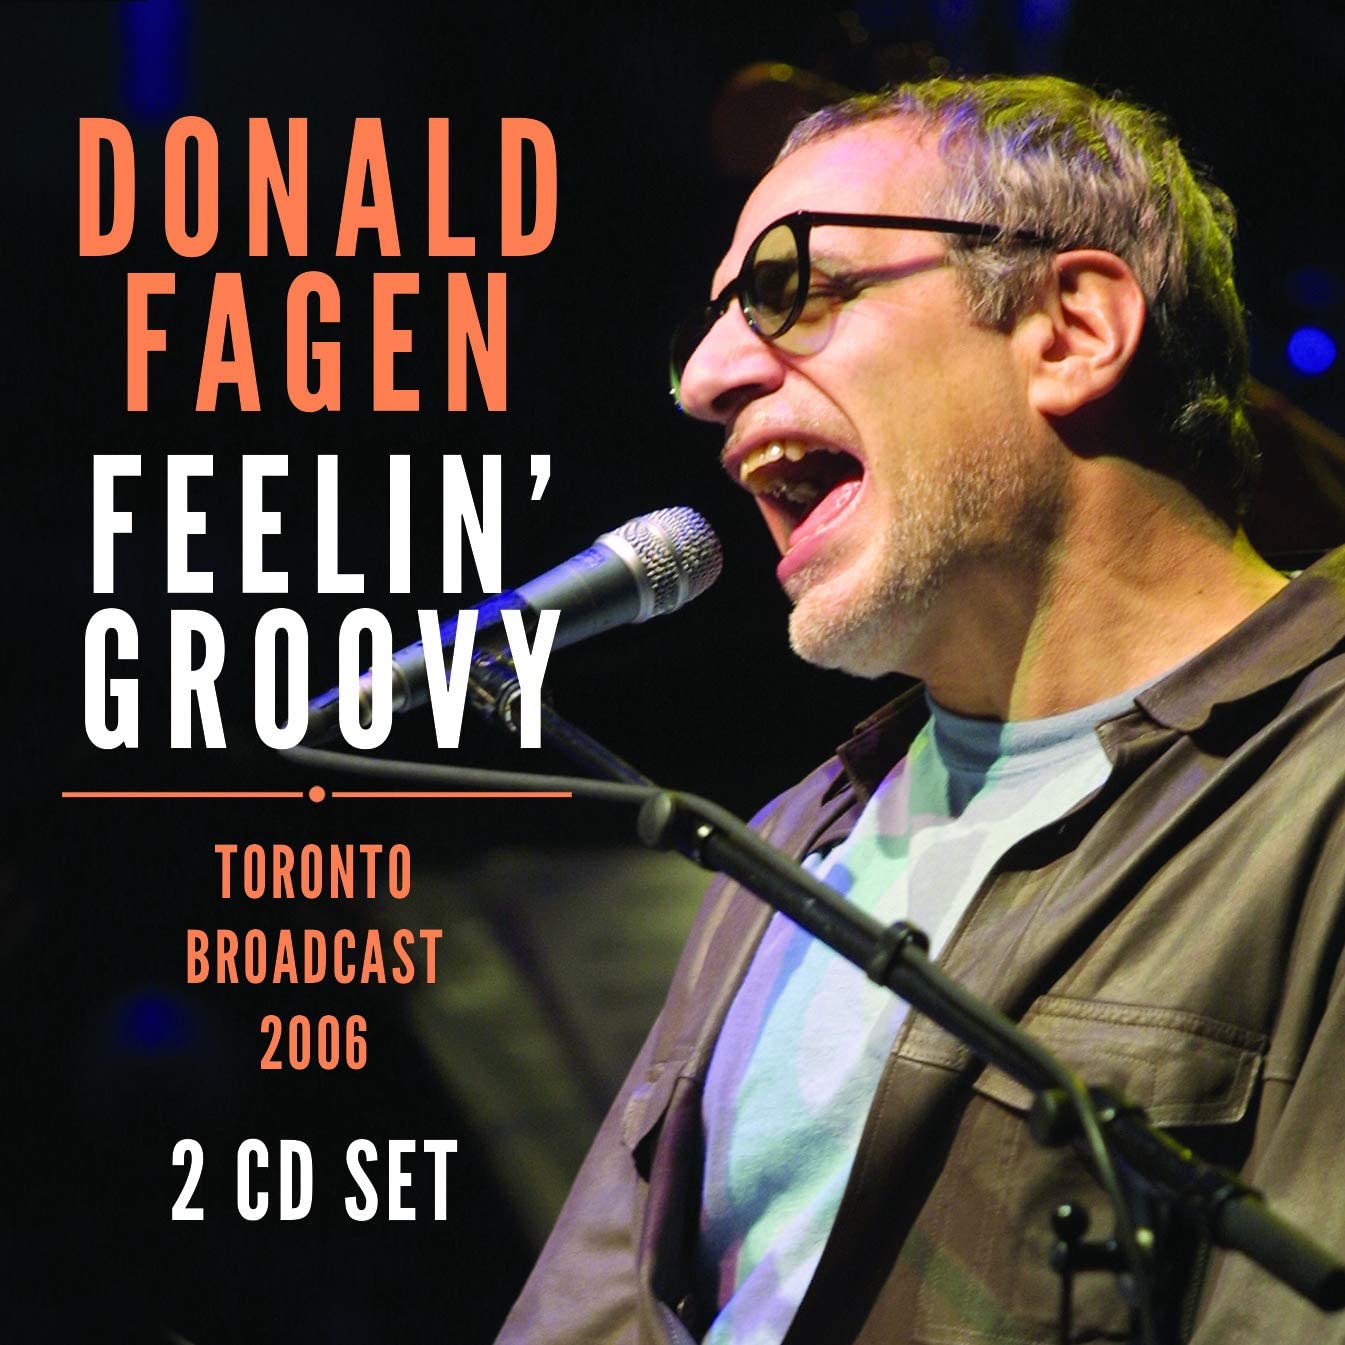 Donald Fagen - Feelin' groovy